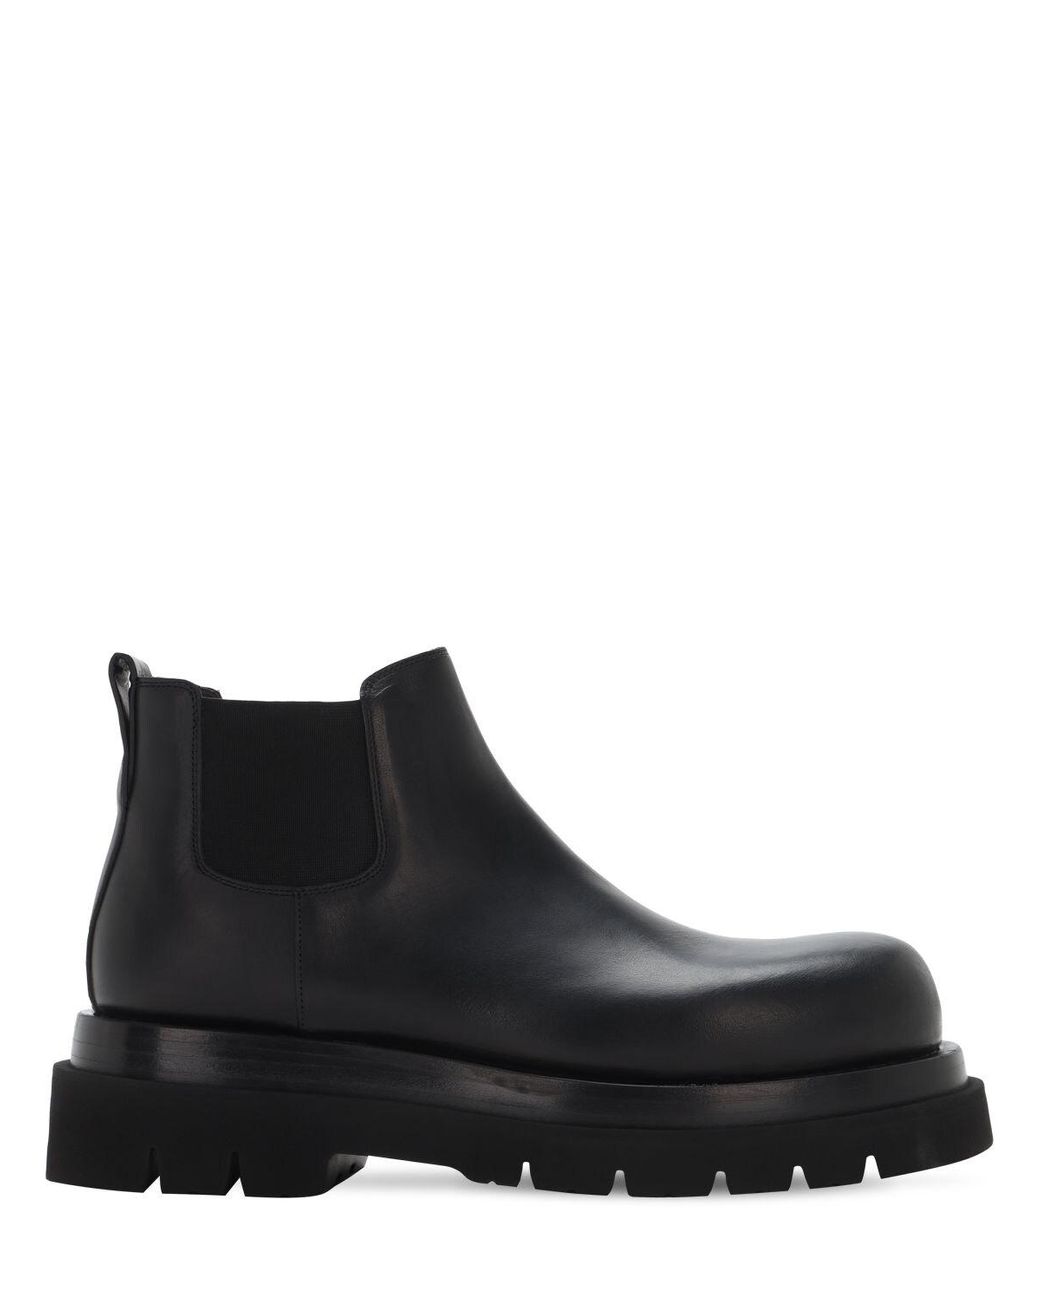 Bottega Veneta Bv Lug Leather Chelsea Mid Boots in Black for Men - Lyst